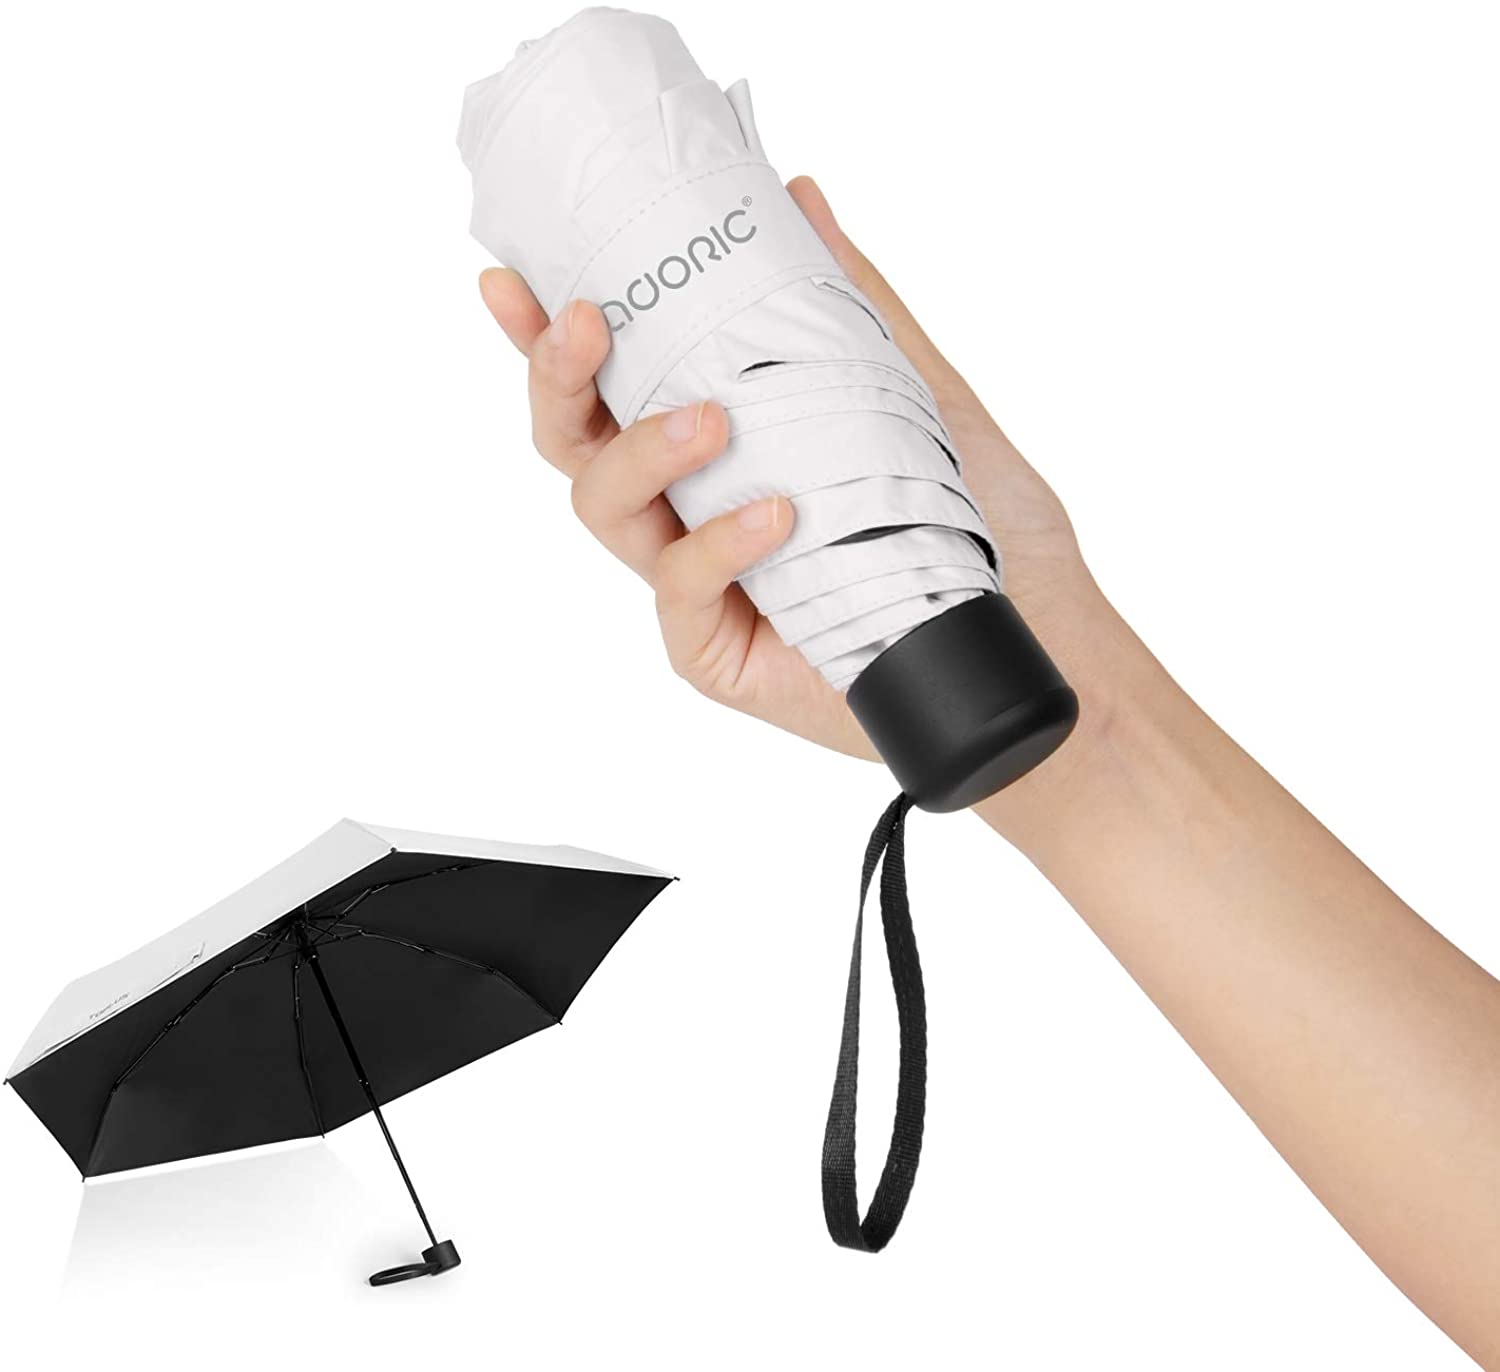 【日本代購】Auoric 折疊傘 超輕 183g 遮擋UV率 99%遮熱 晴雨兩用 白色